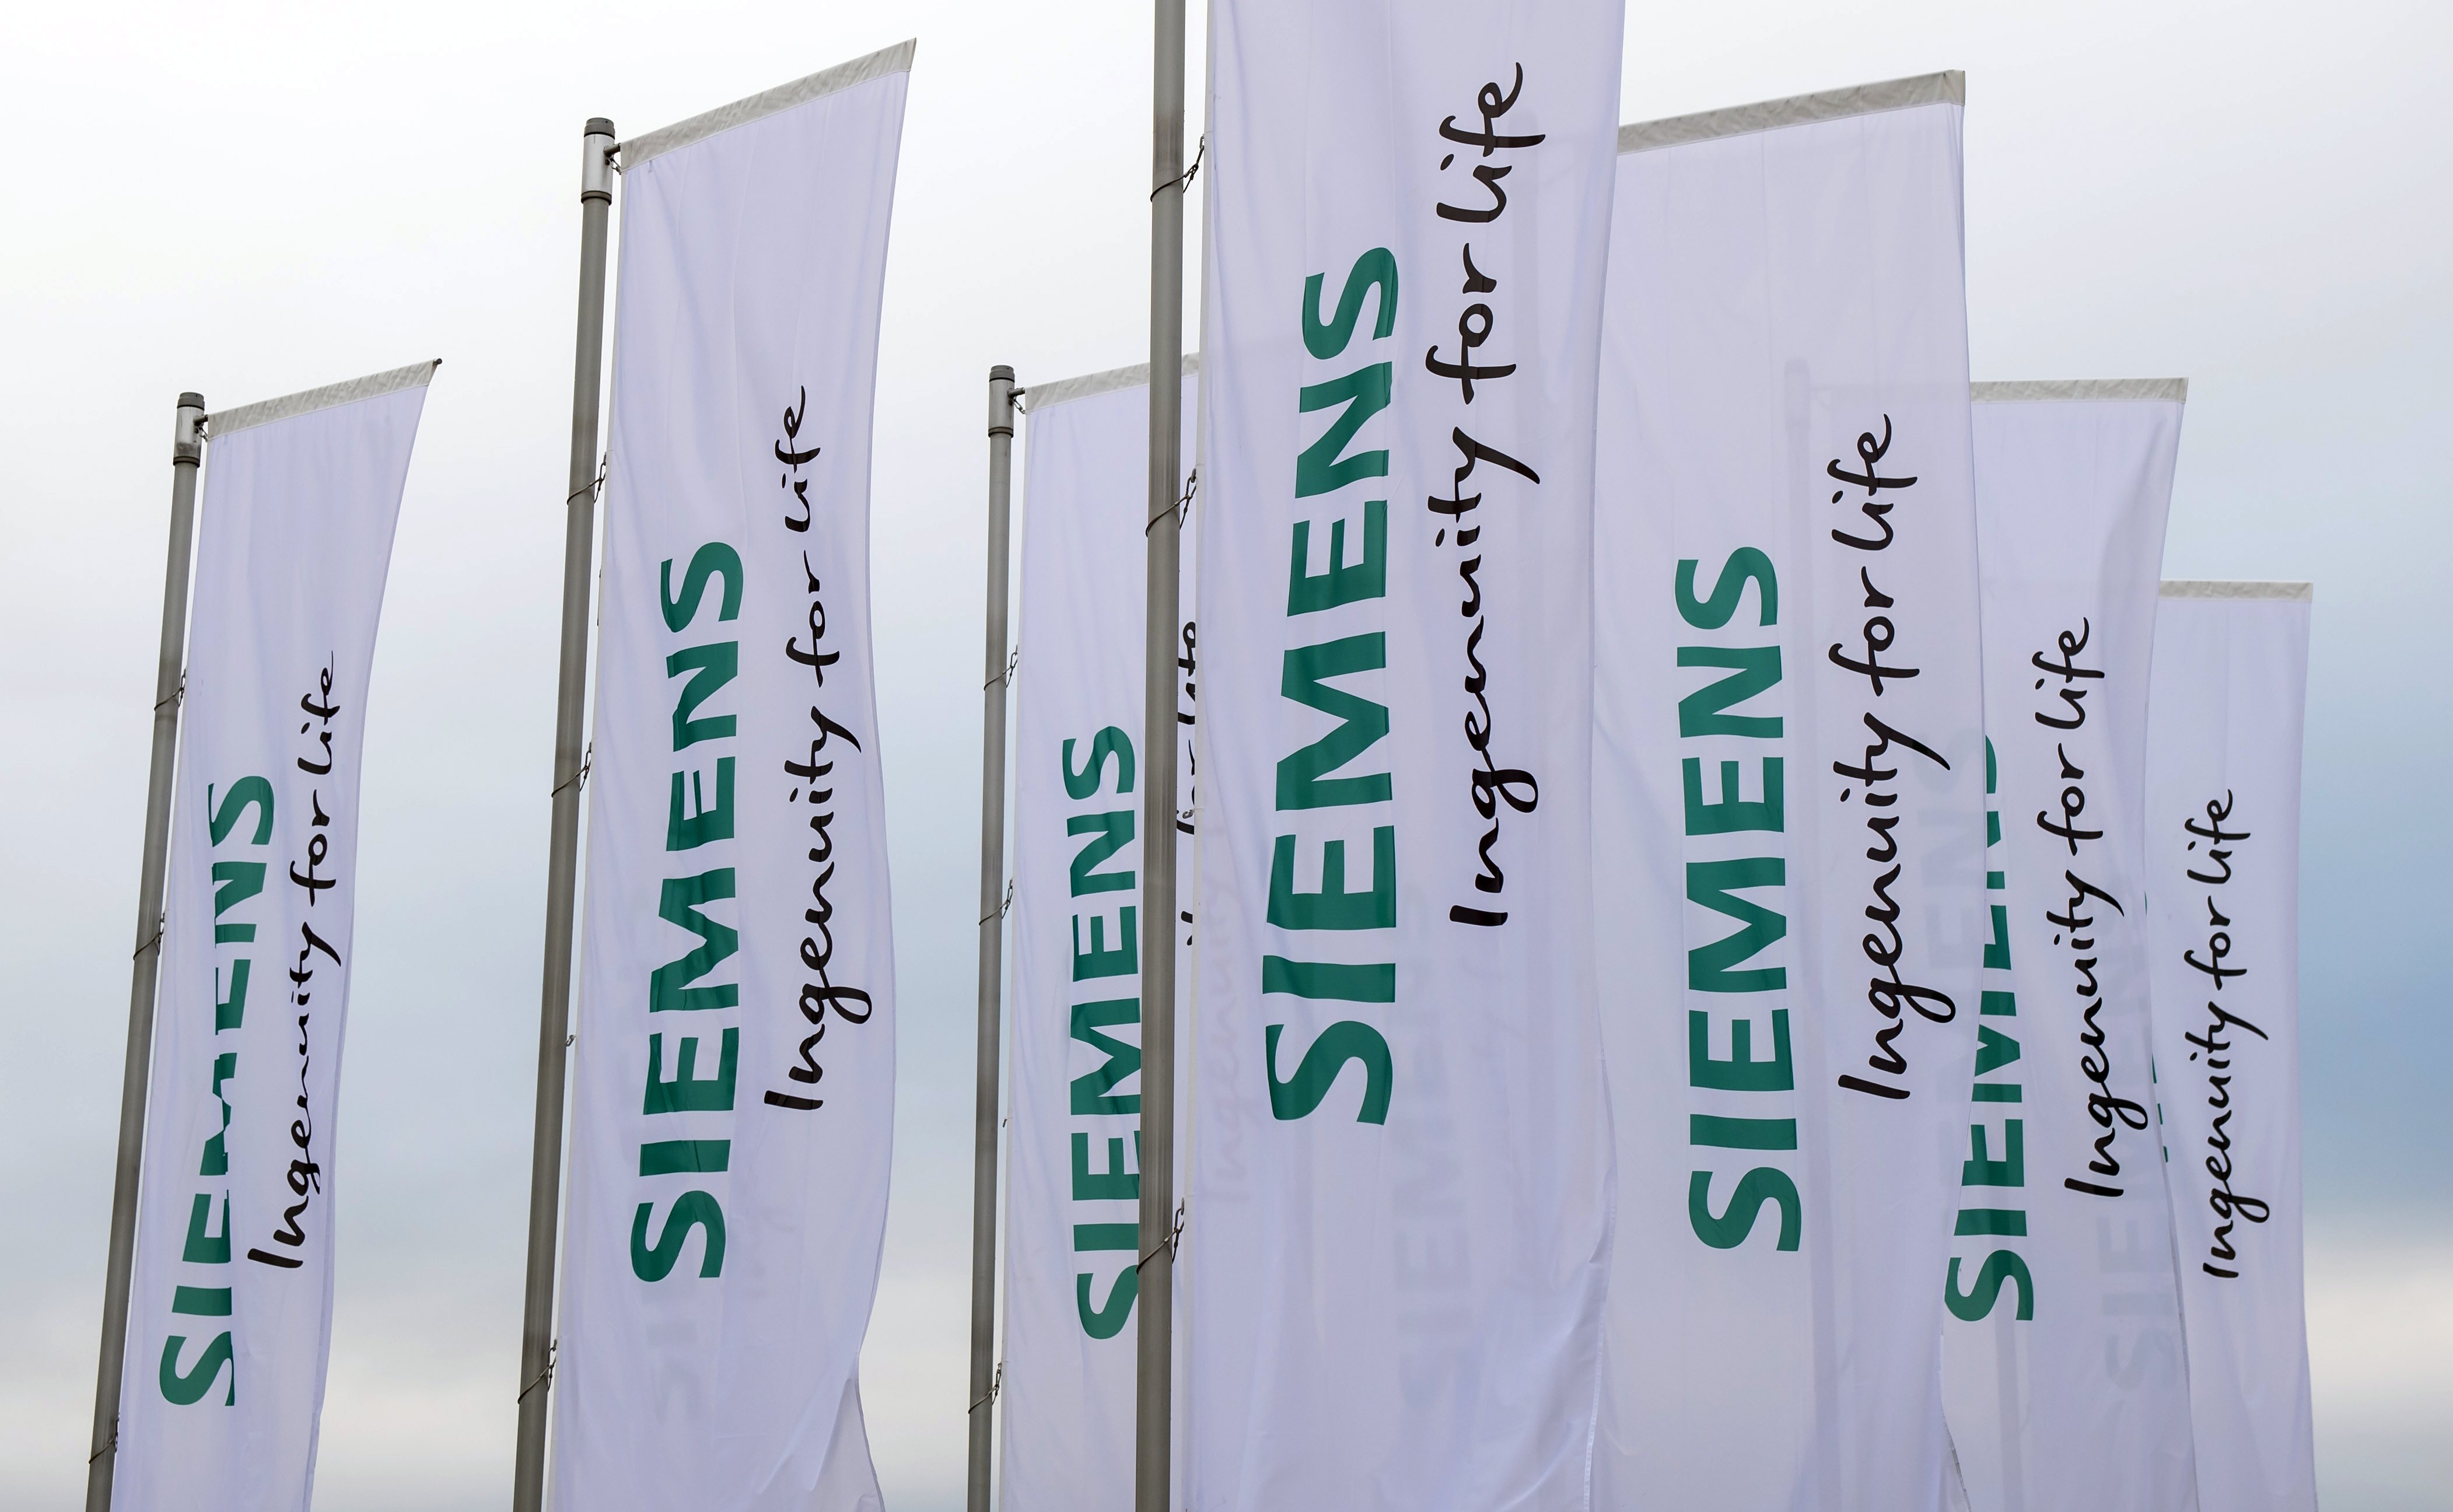 Σκάνδαλο Siemens: Τι είπε η γραμματέας του Χριστοφοράκου για τα «μαύρα ταμεία»